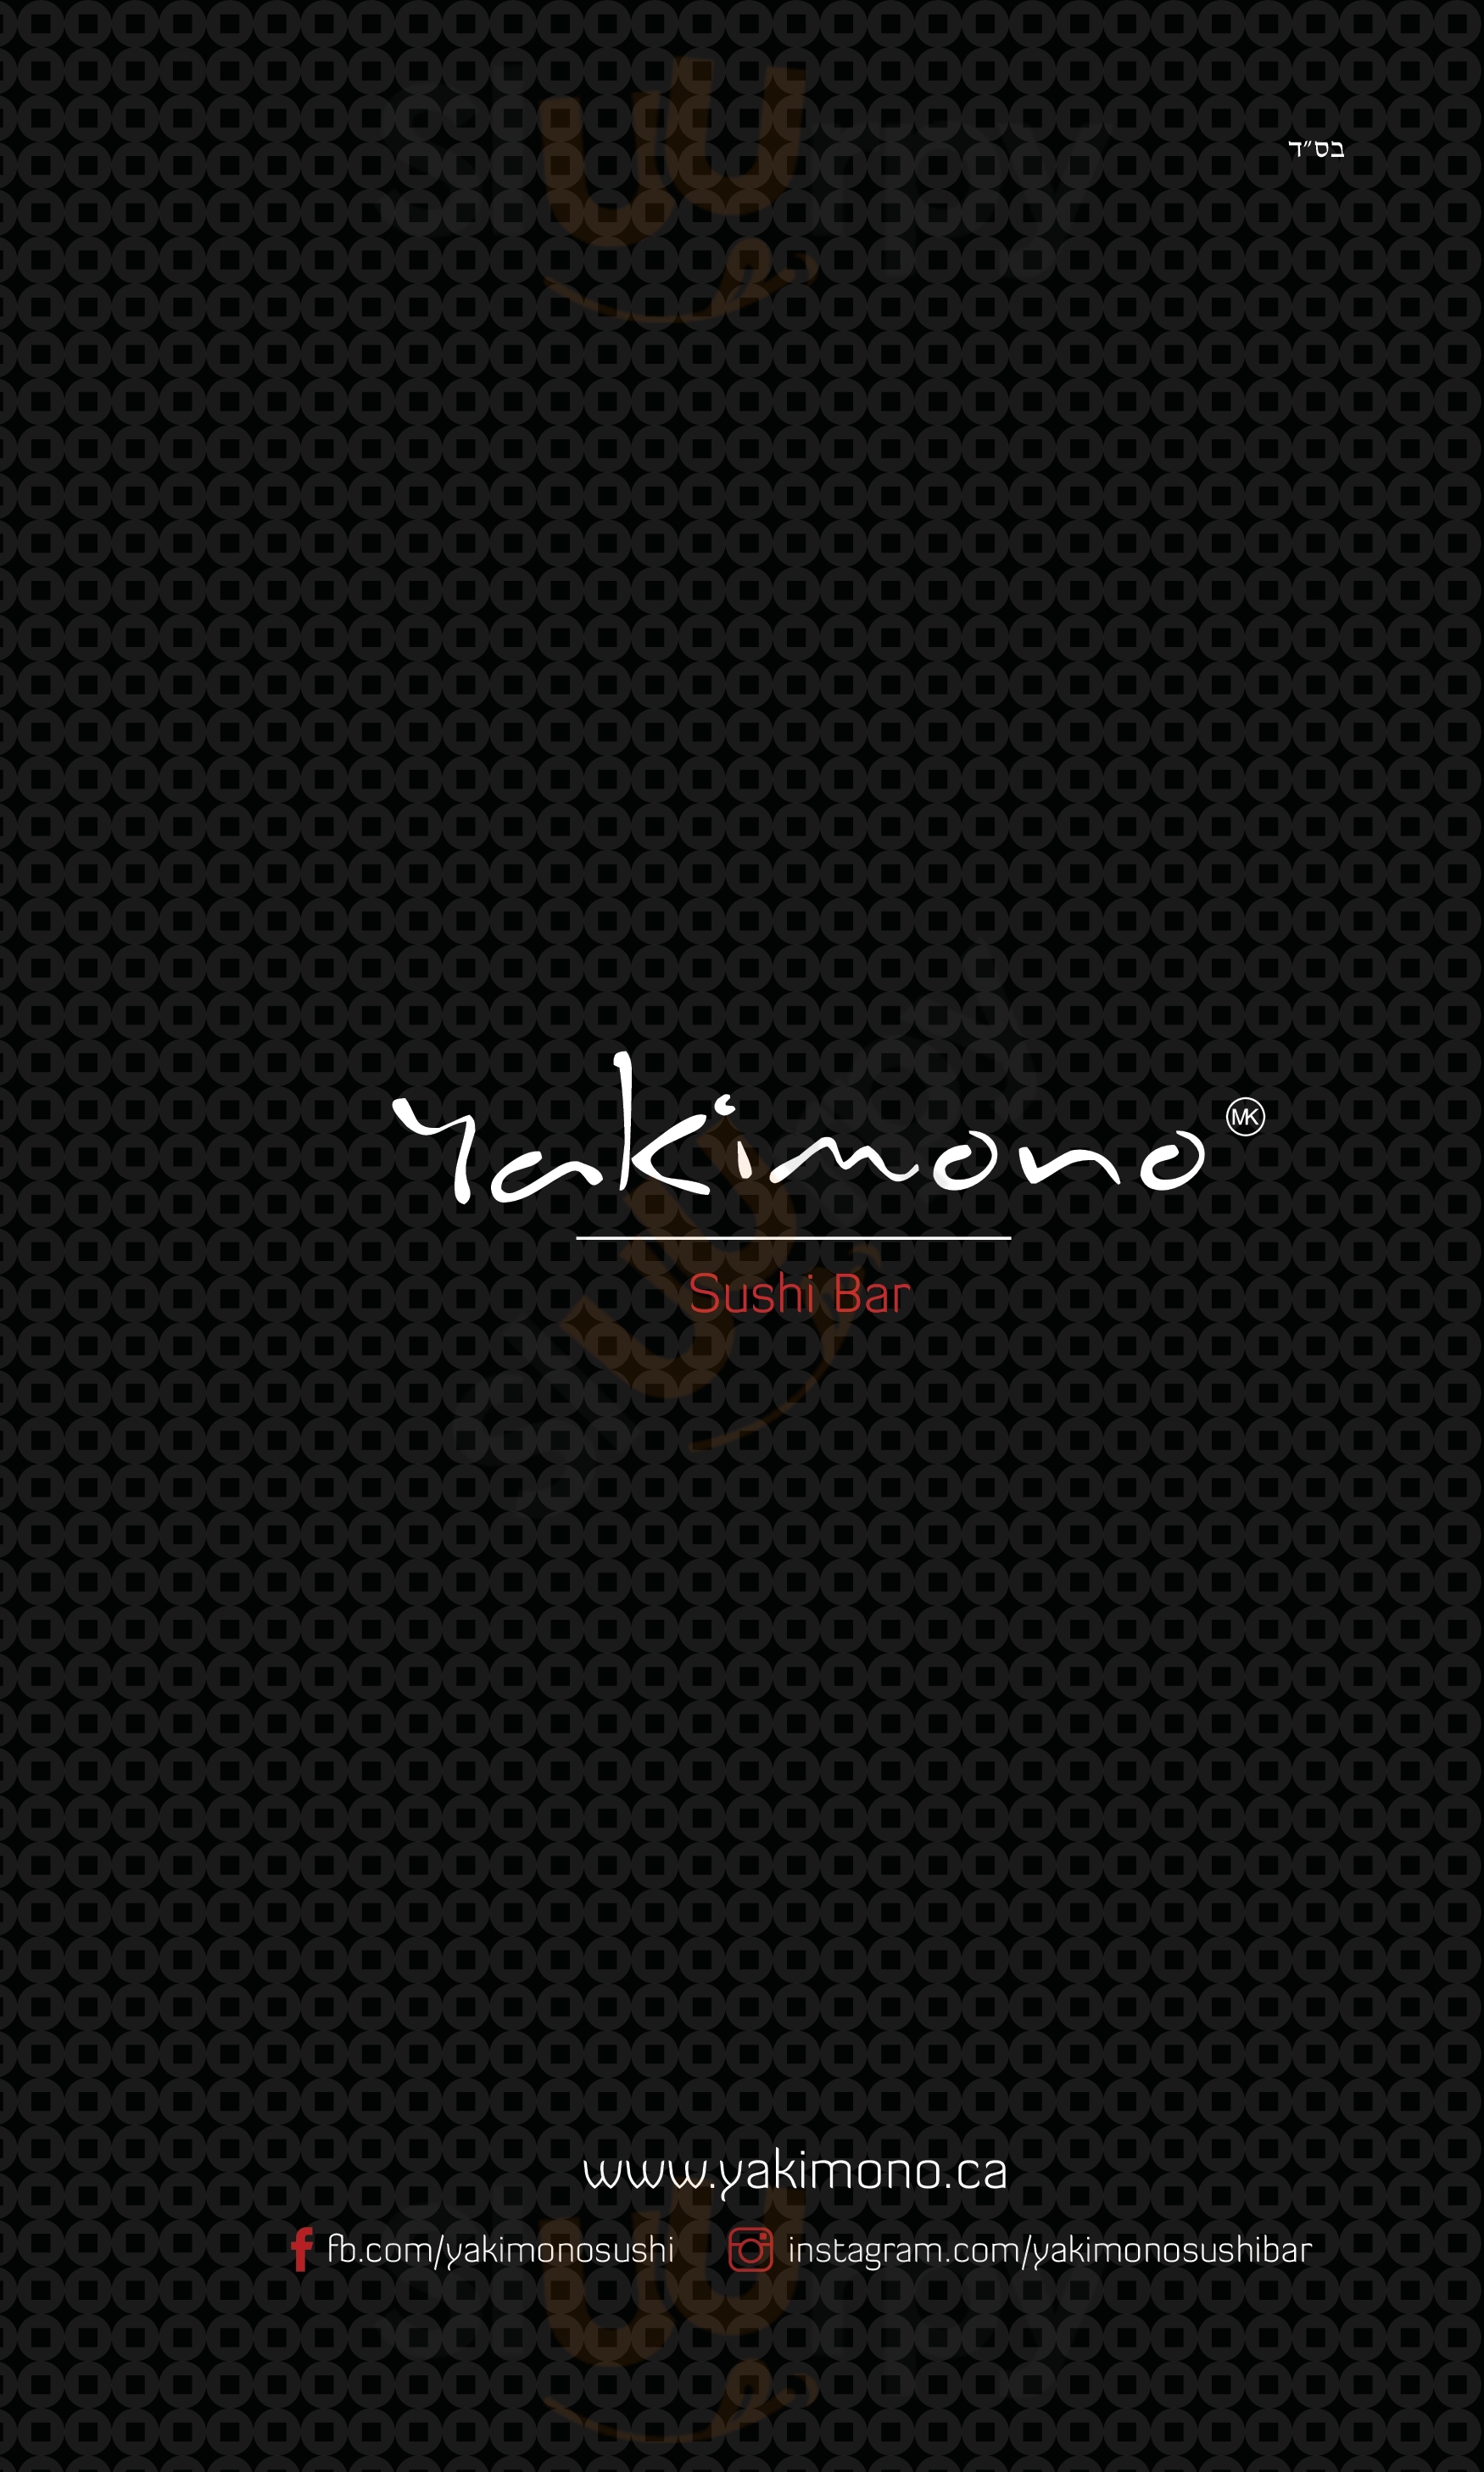 Yakimono Sushi Bar Montreal Menu - 1